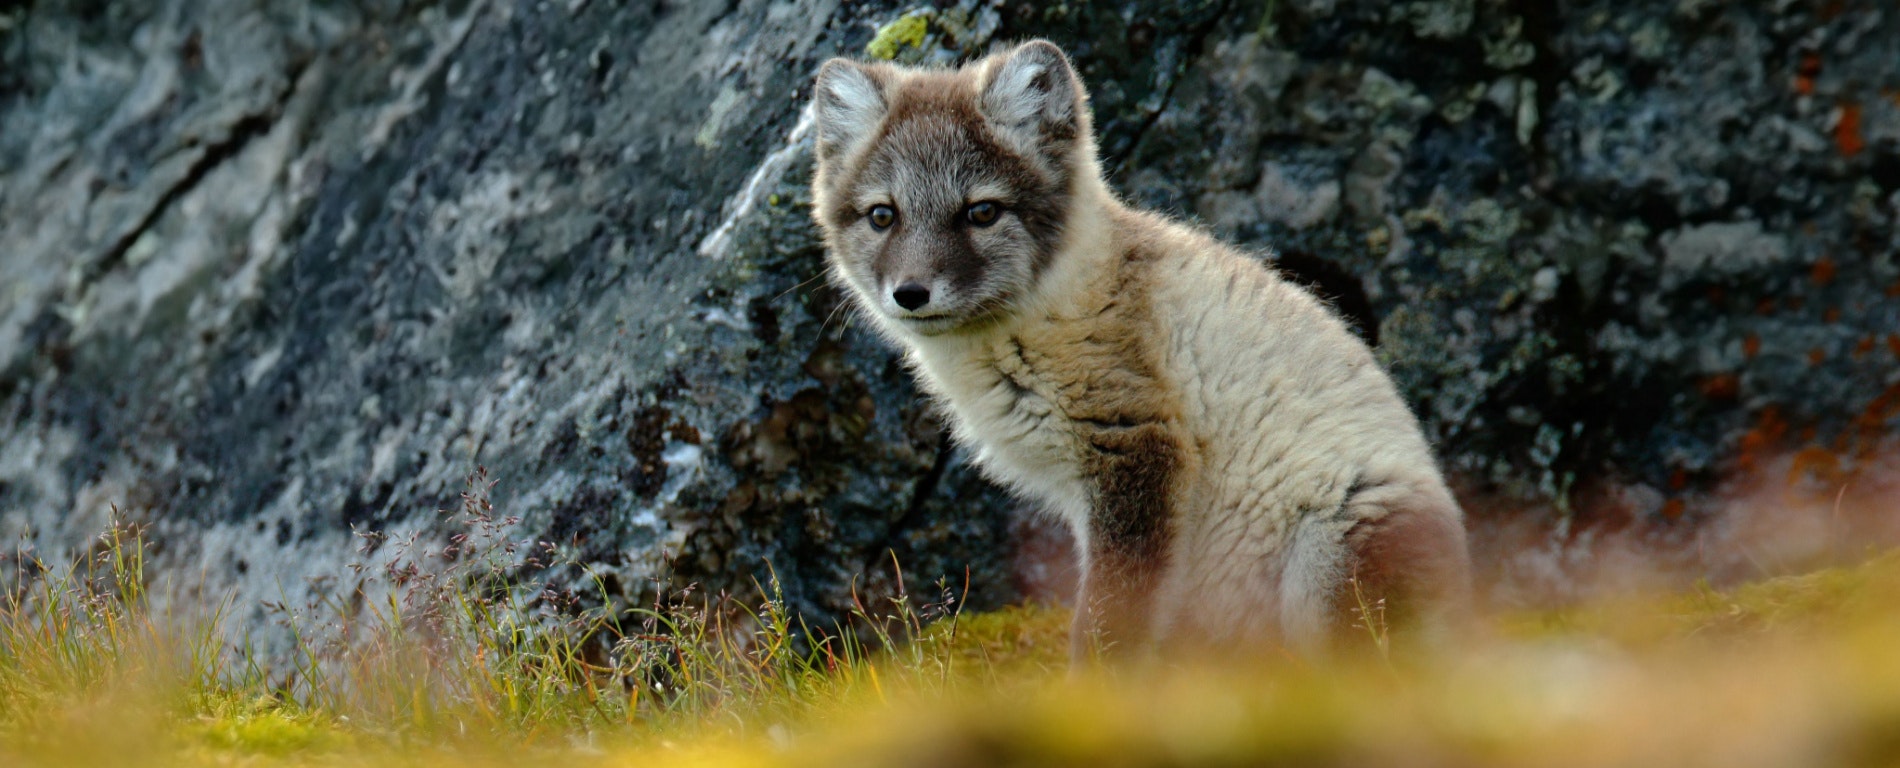 An adorable Icelandic wild fox